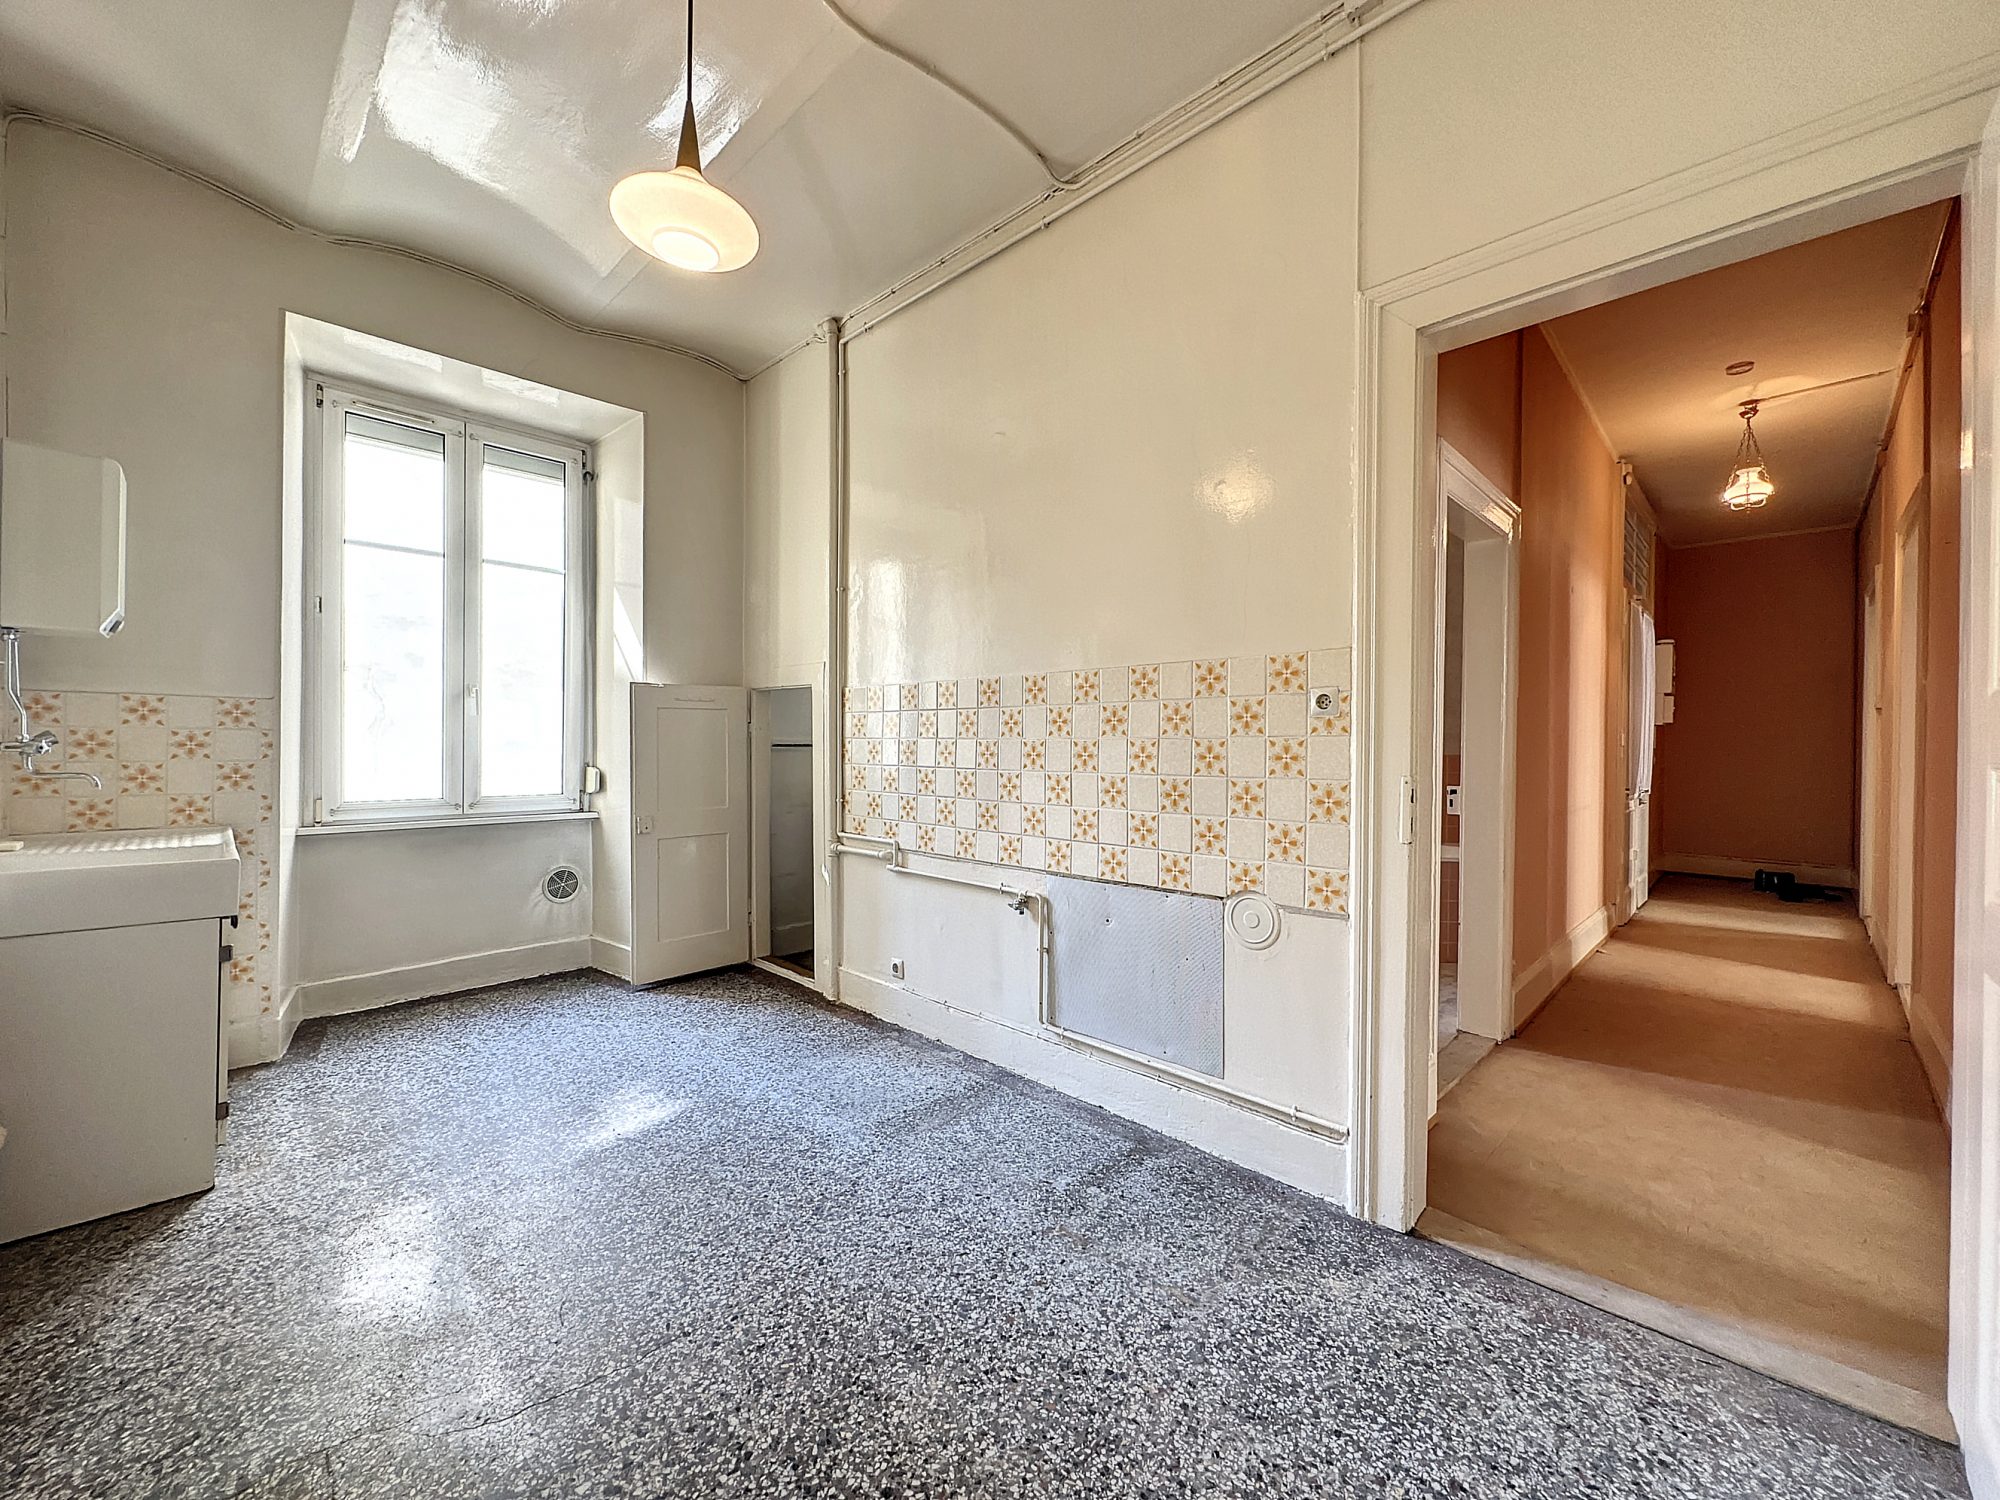 4 pièces quartier contades - achat appartement Strasbourg - Bintz Immobilier - 4